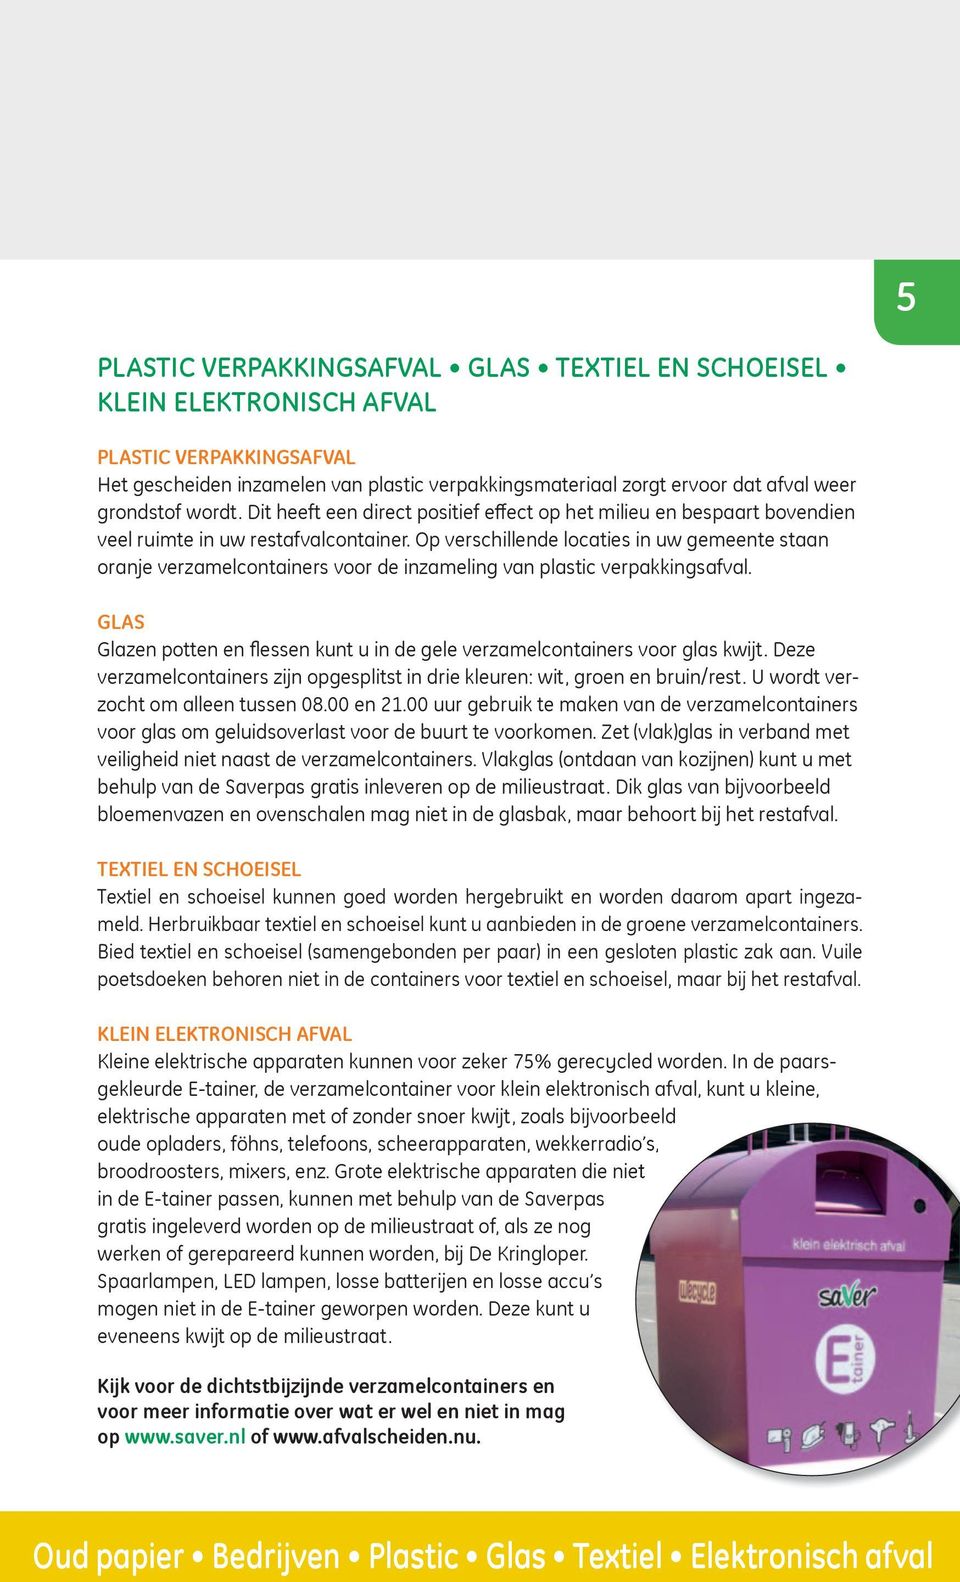 Op verschillende locaties in uw gemeente staan oranje verzamelcontainers voor de inzameling van plastic verpakkingsafval.